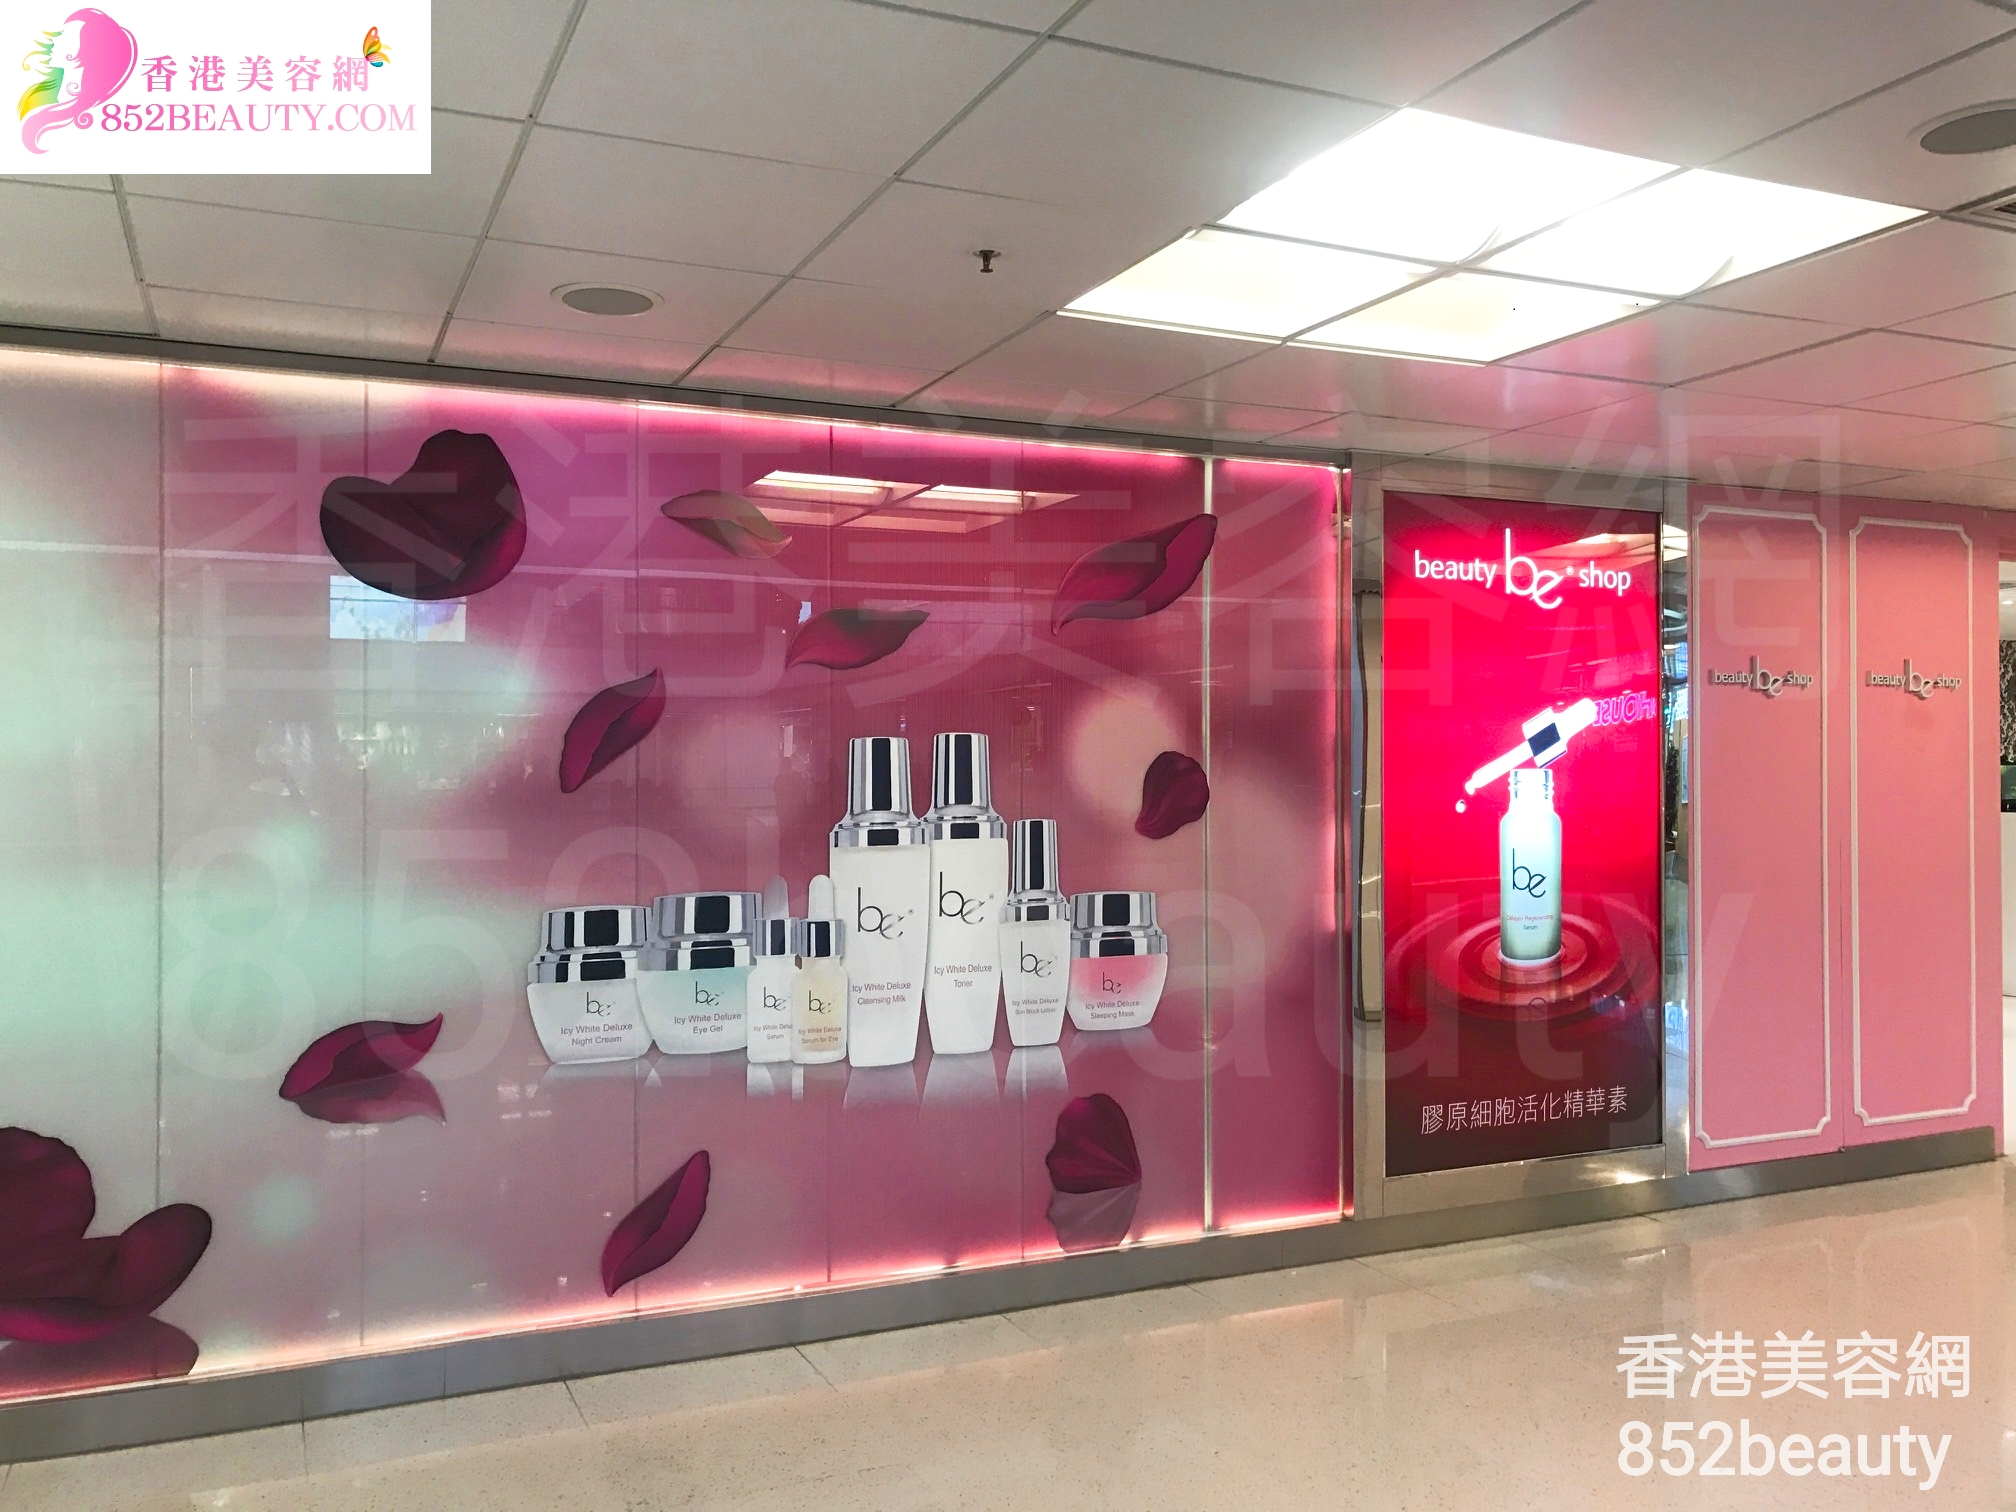 美容院 Beauty Salon: be beauty shop (葵涌廣場)